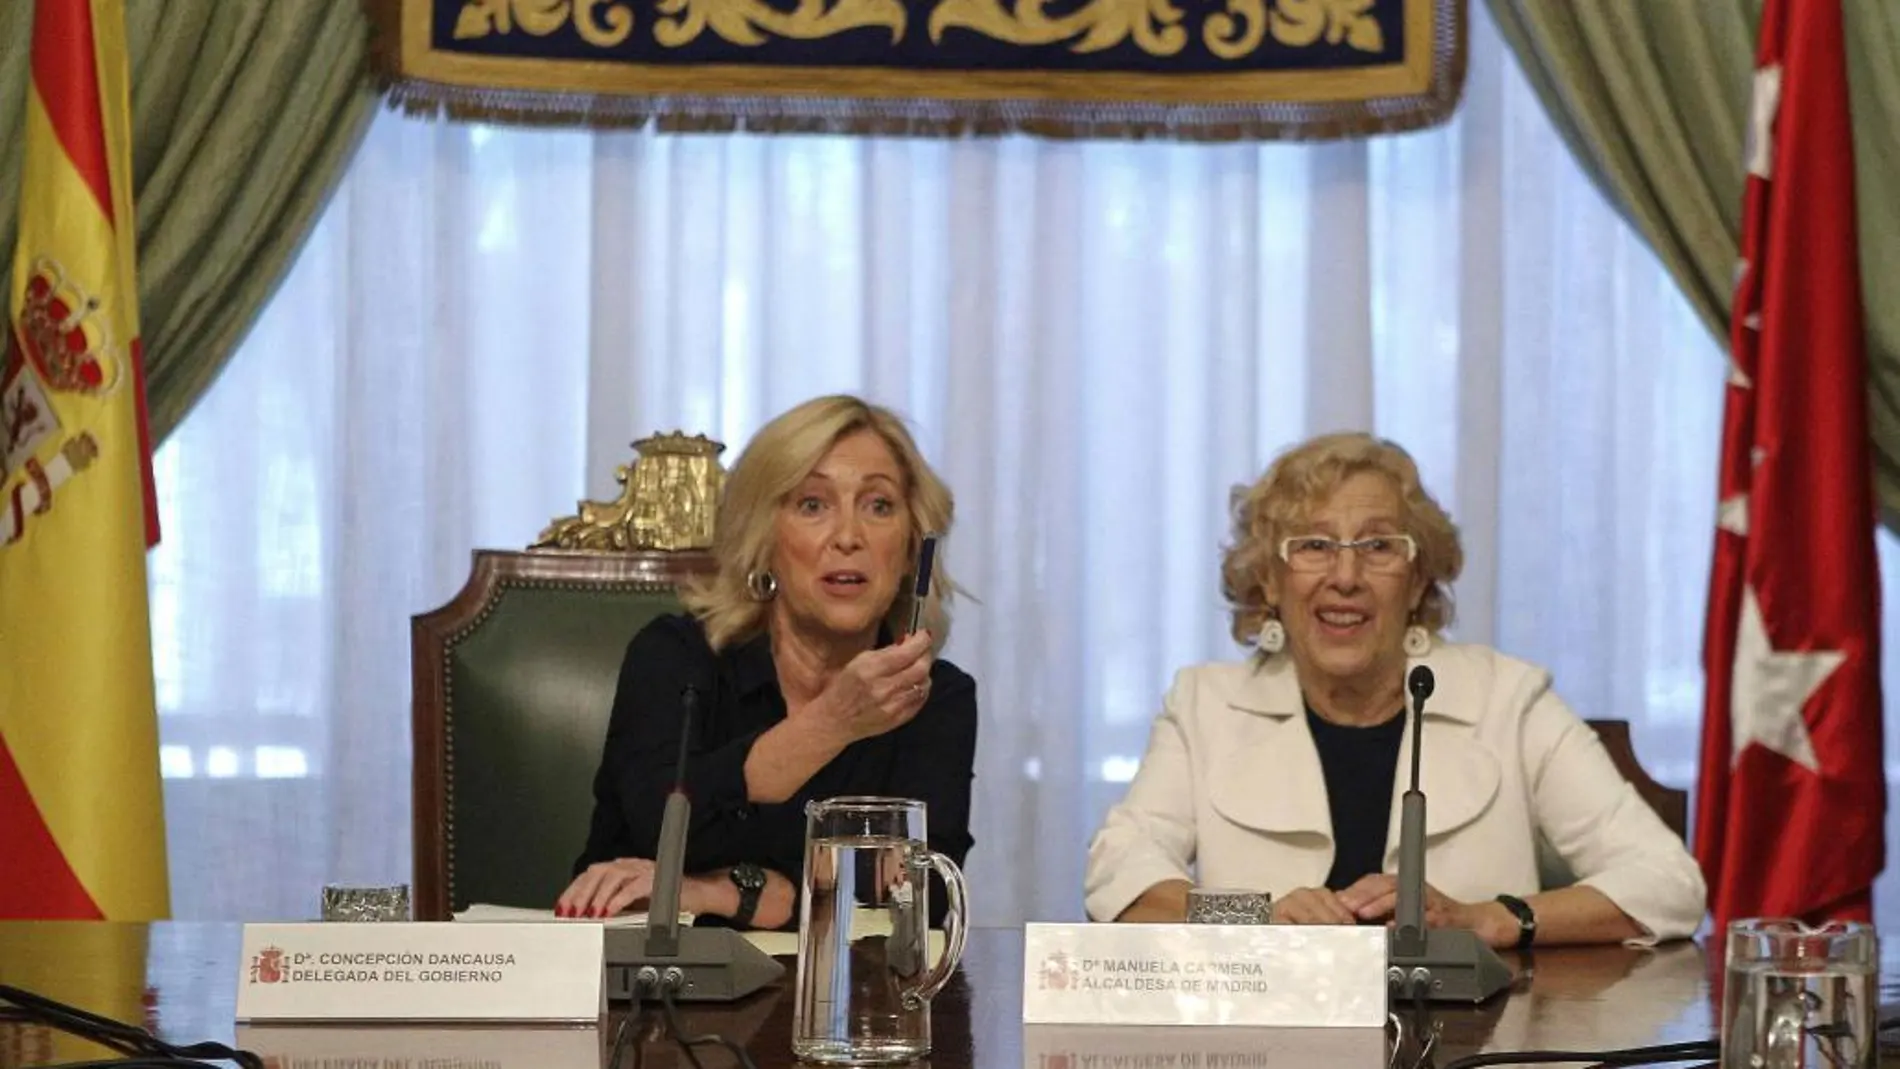 La delegada del Gobierno, Concepción Dancausa, junto a La alcaldesa de Madrid, Manuela Carmena.